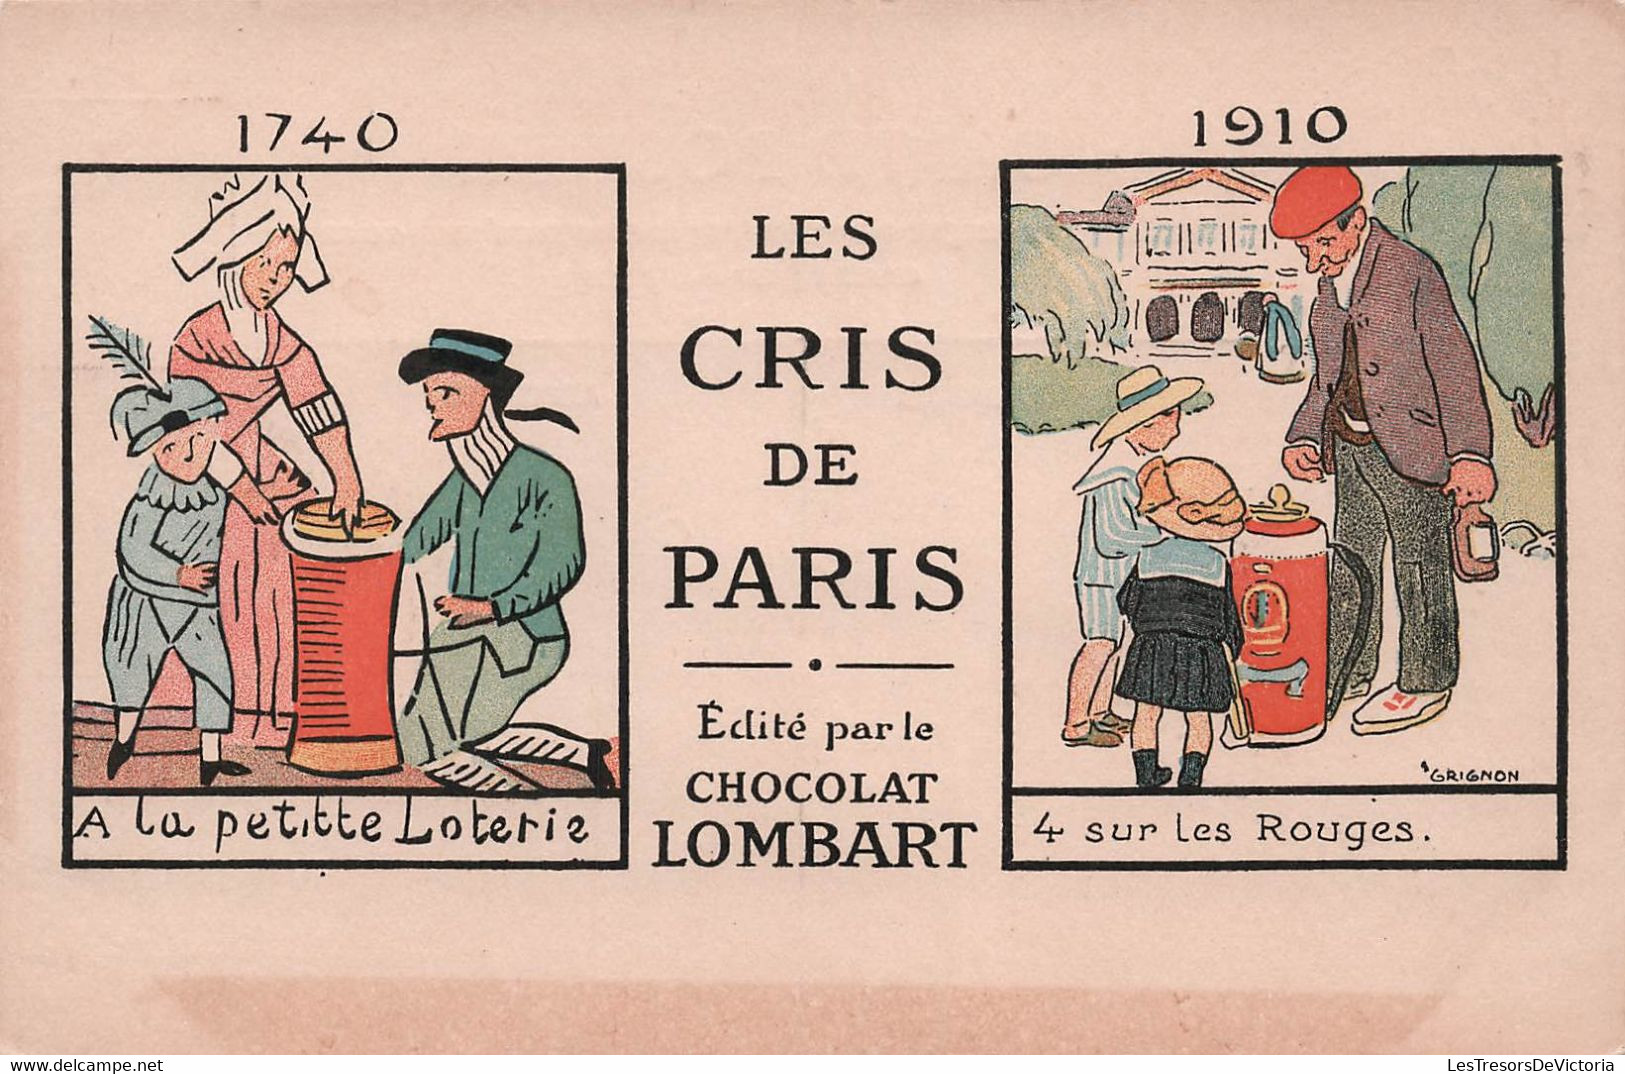 CPA Chocolat Lombart - Les Cris De Paris - A La Petite Loterie - 4 Sur Les Rouges - Advertising